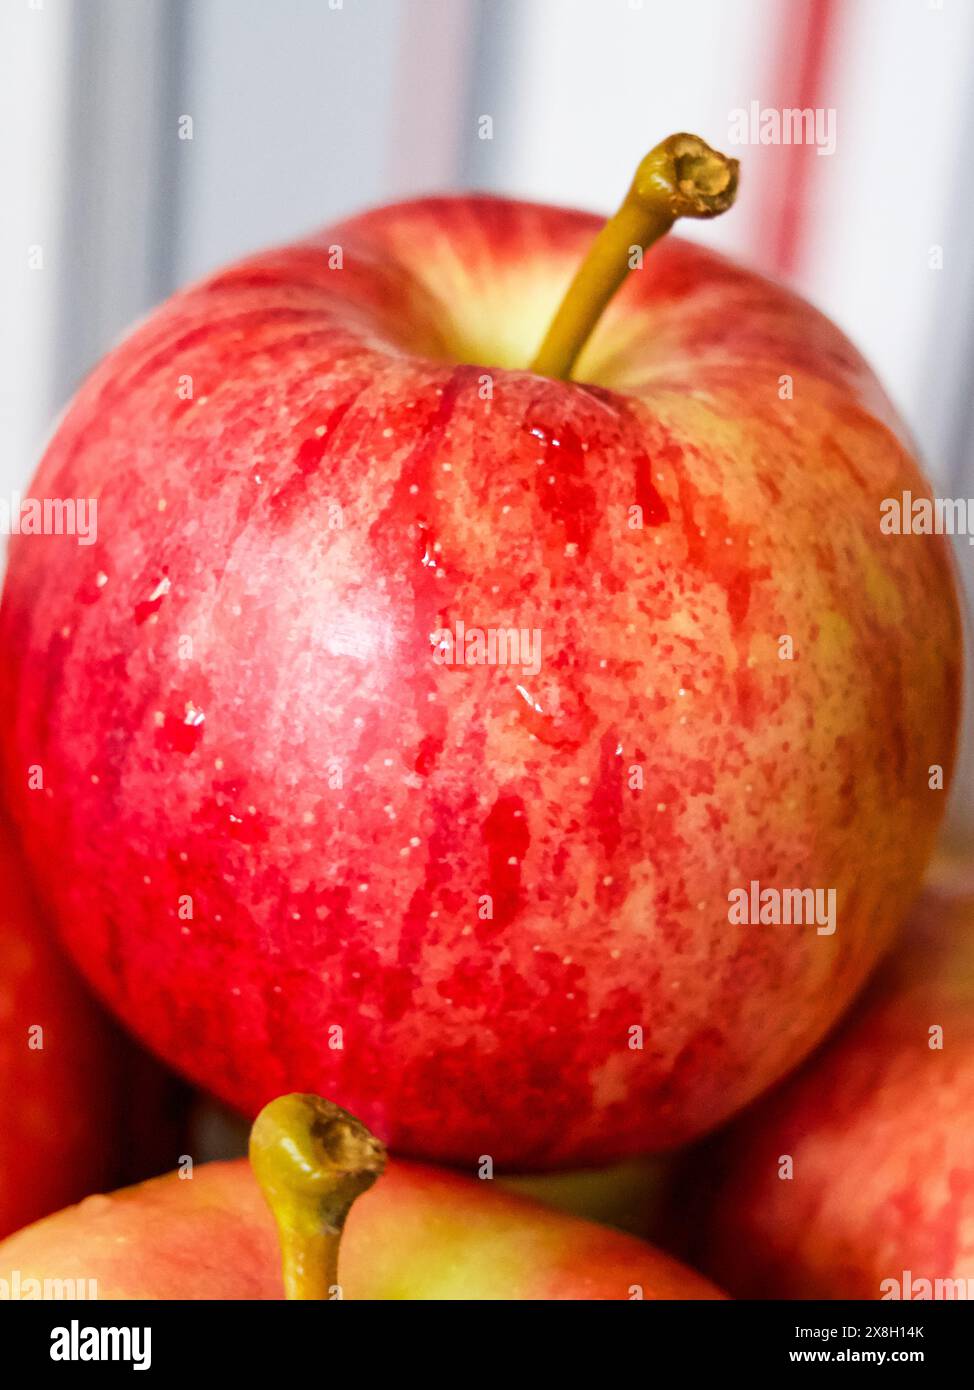 Lebendiges Apple Display. Ein leuchtender roter Apfel mit sichtbarem Stiel, ideal für kulinarische Kunst oder umweltfreundliche Lebensmittelwerbung. Stockfoto